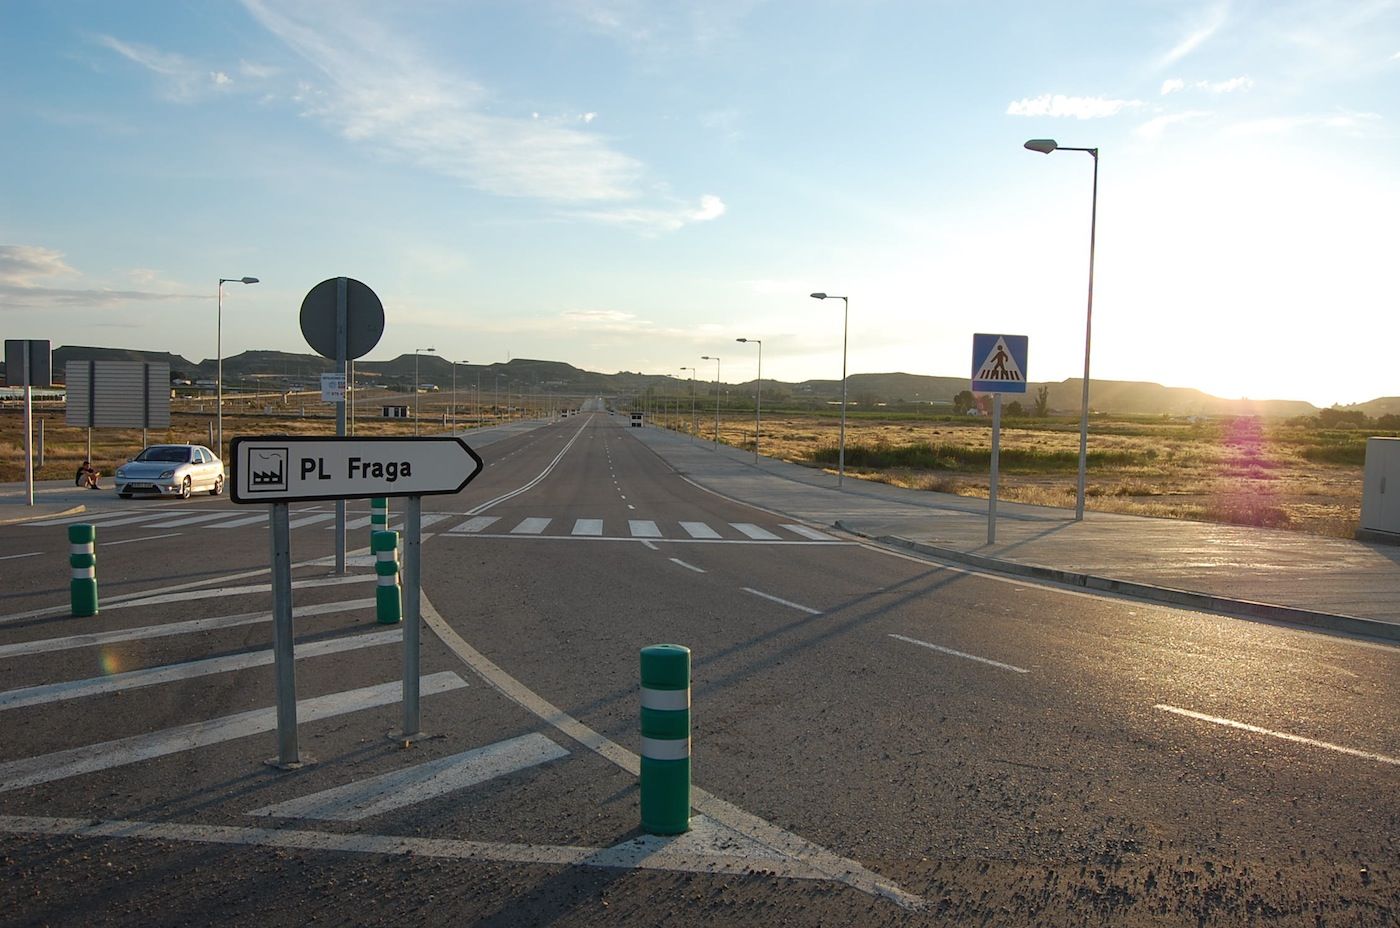 La PLFraga se encuentra situada en el extremo sureste de la provincia de Huesca.